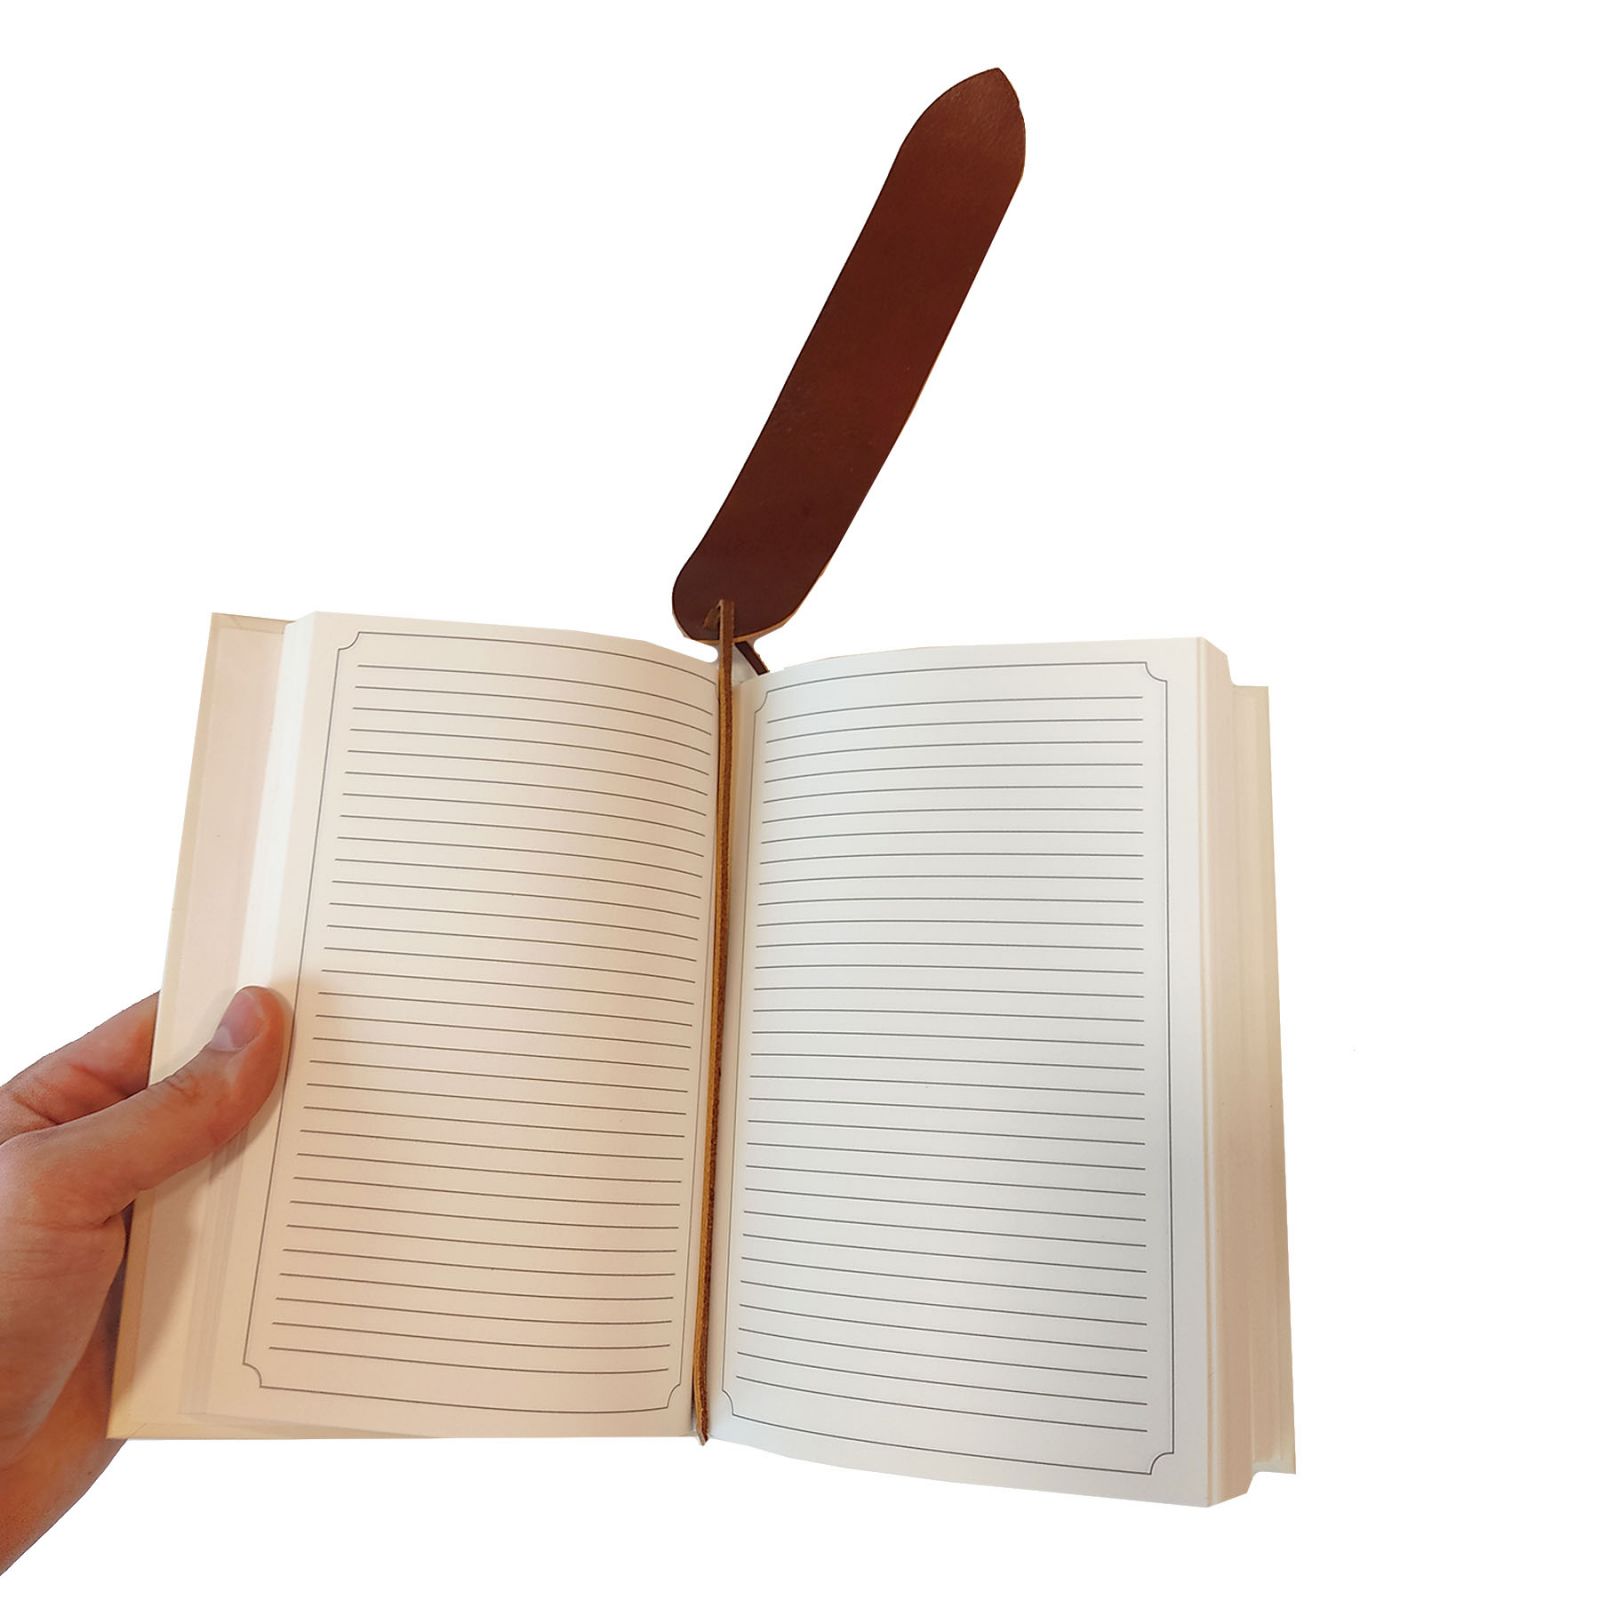 odiniai skirtukai knygoms is tikros odos knygai uzrasinei ranku darbo lietuviski personalizuoti su inicialais keliems puslapiams dovana skaitantiems nebrangi  a 